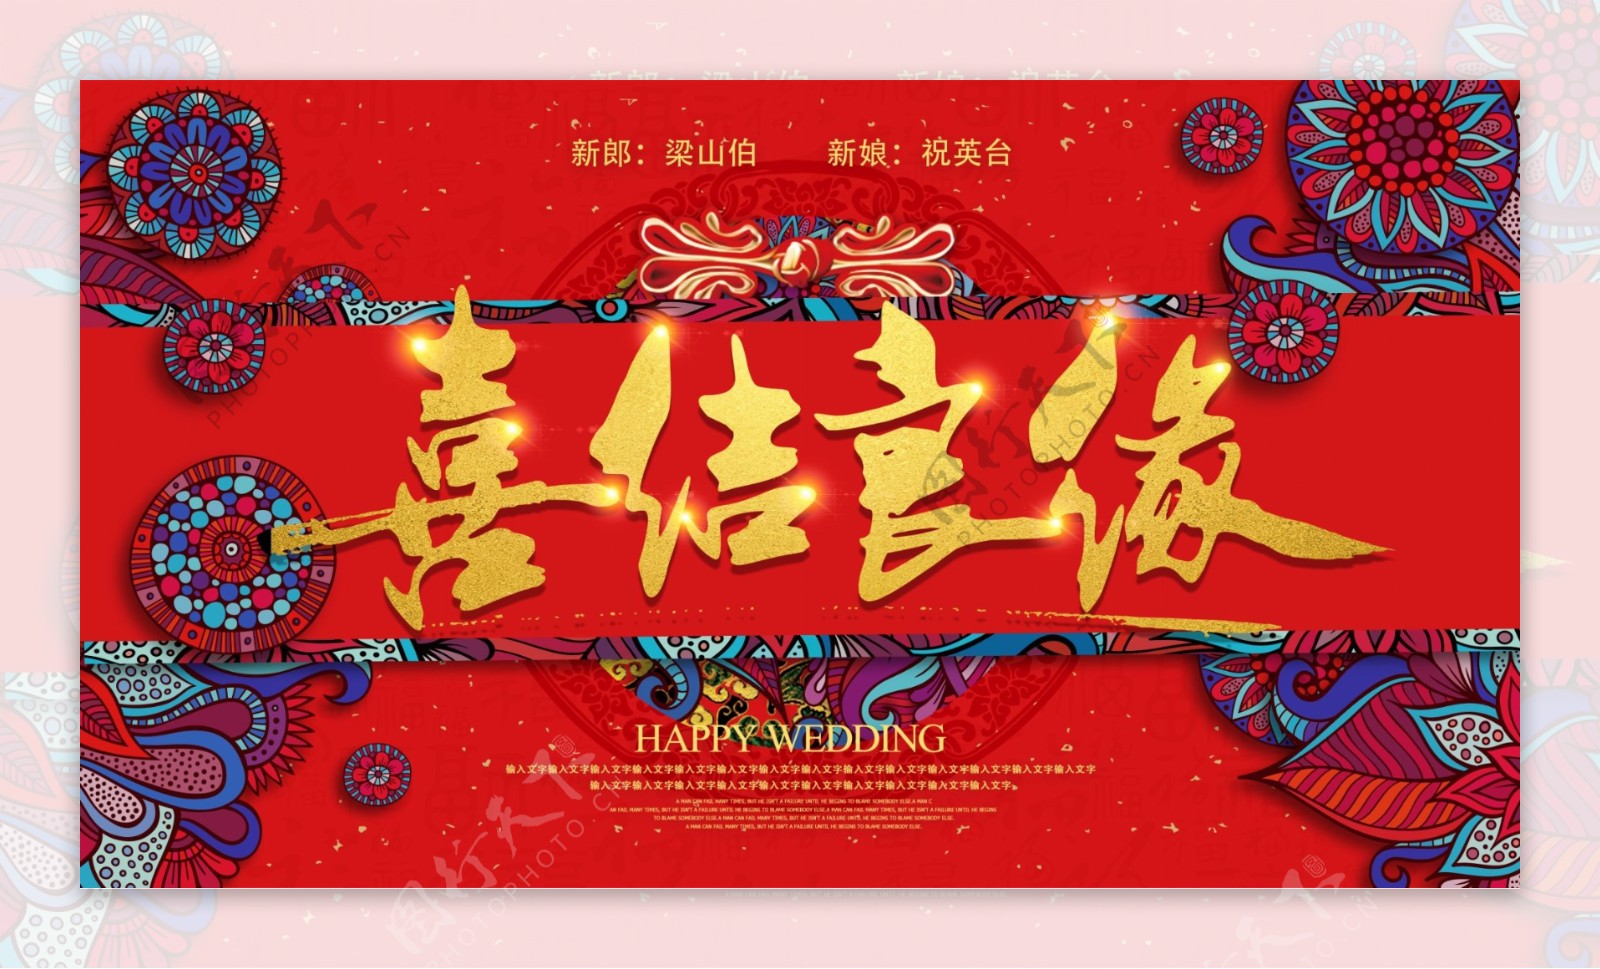 中式古典民族风书法喜结良缘婚礼背景板